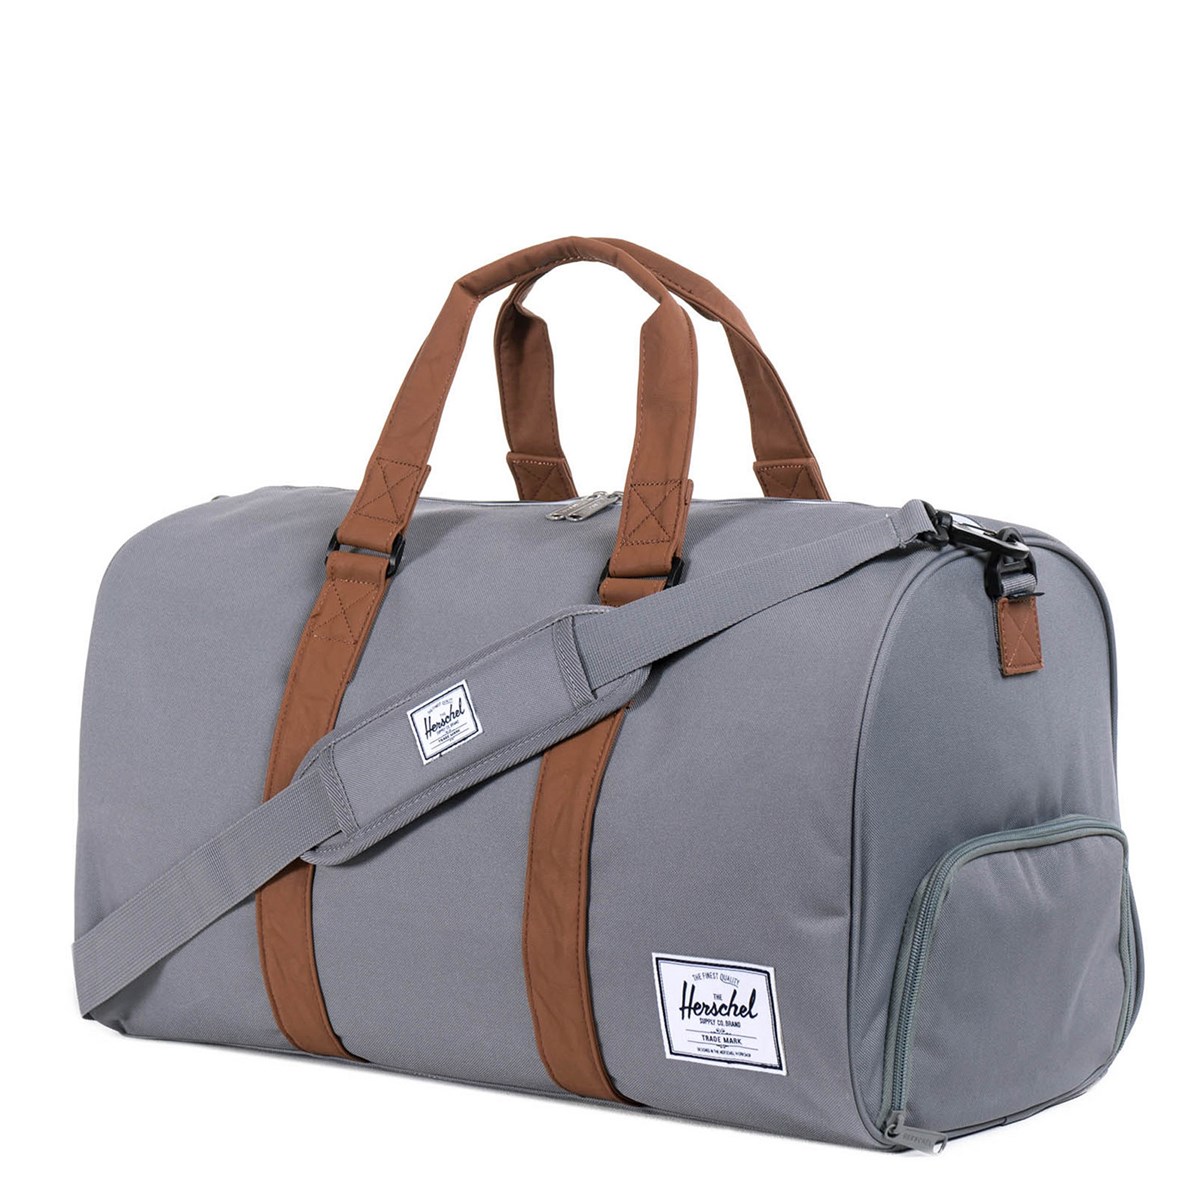 Herschel Duffle Bag Size Guide | IQS Executive